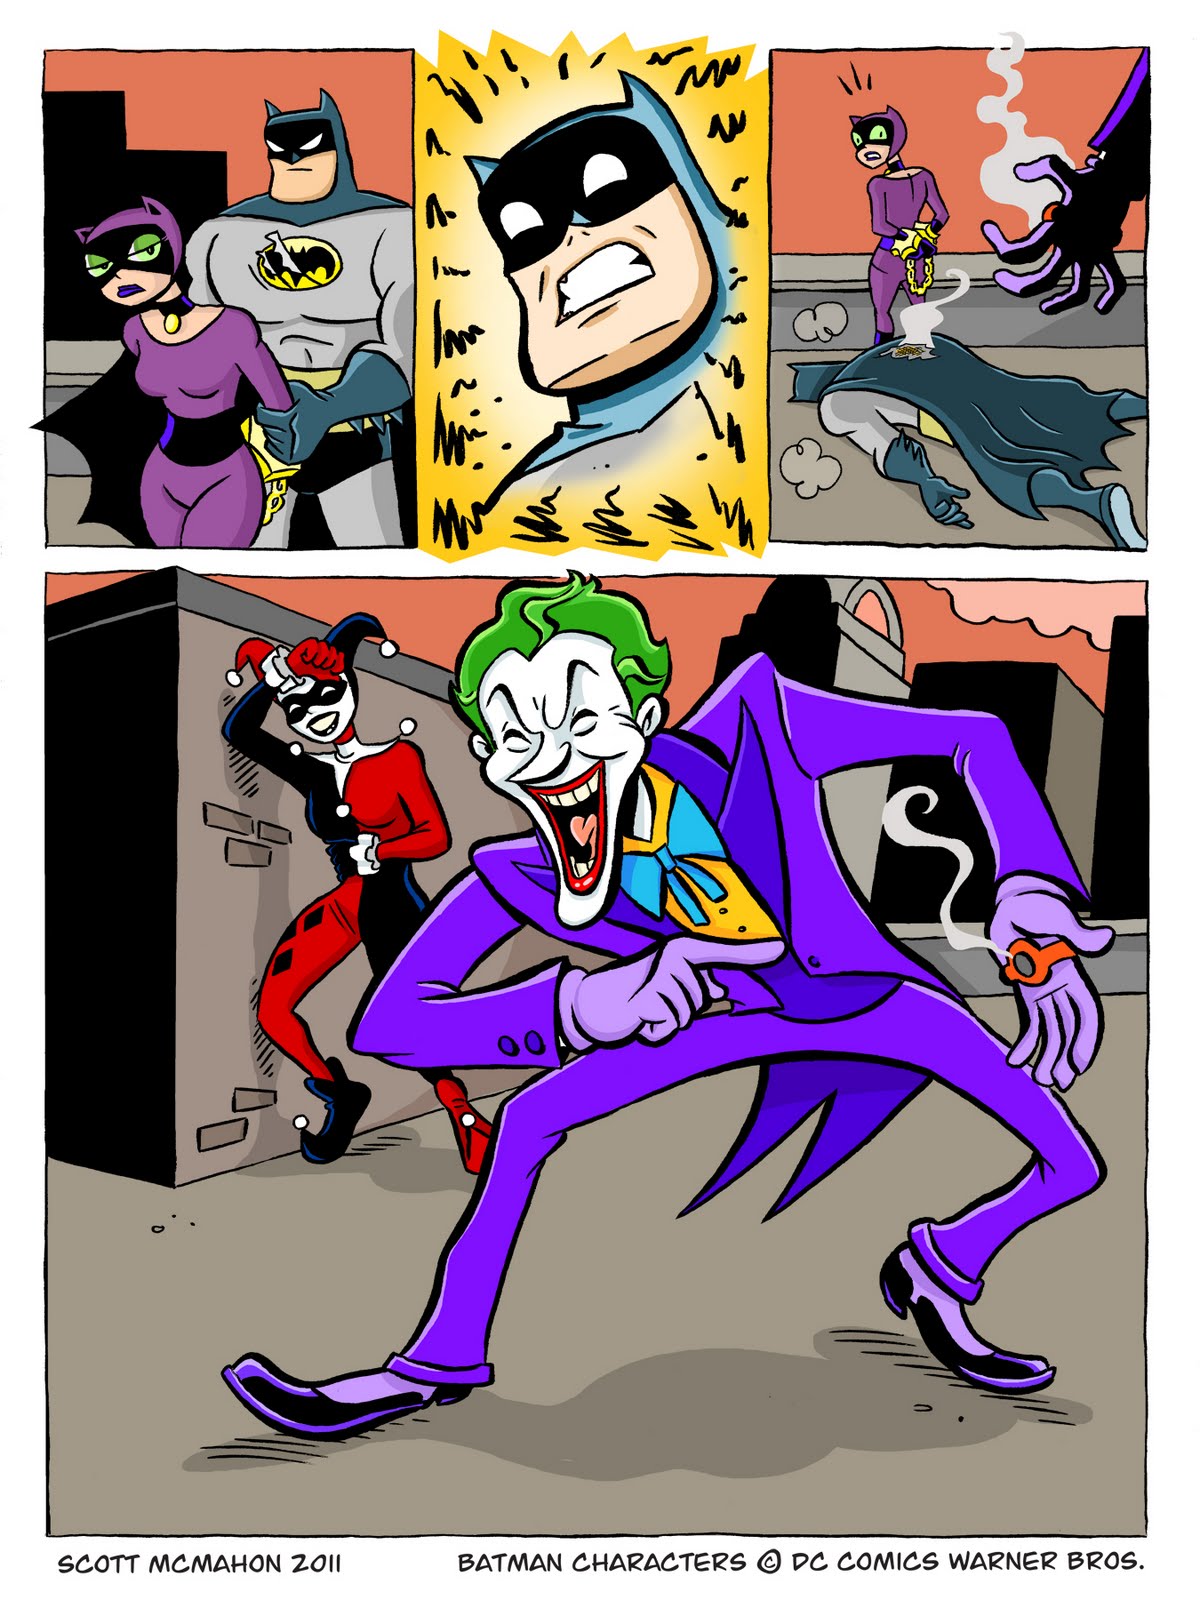 http://4.bp.blogspot.com/_eaZJeyEHcqI/TTyKDdc0OxI/AAAAAAAAAjQ/ZDS_d6nr9wM/s1600/Batman_vs_Joker_pg1.jpg